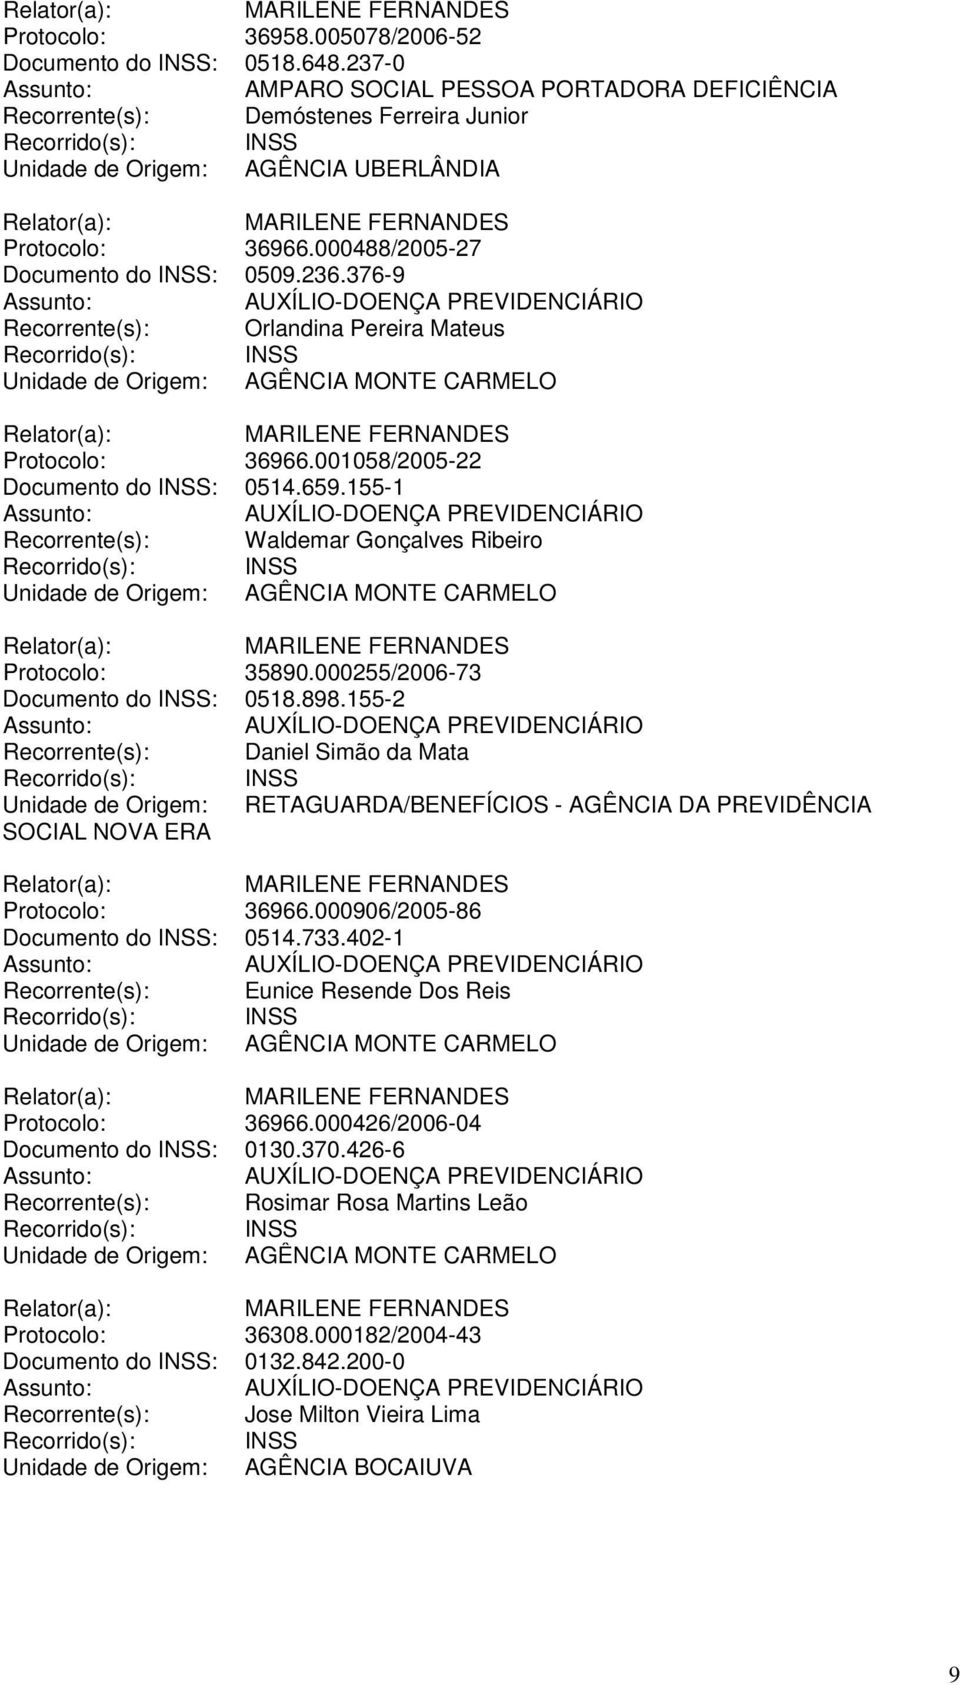 155-1 Recorrente(s): Waldemar Gonçalves Ribeiro Unidade de Origem: AGÊNCIA MONTE CARMELO Protocolo: 35890.000255/2006-73 Documento do INSS: 0518.898.